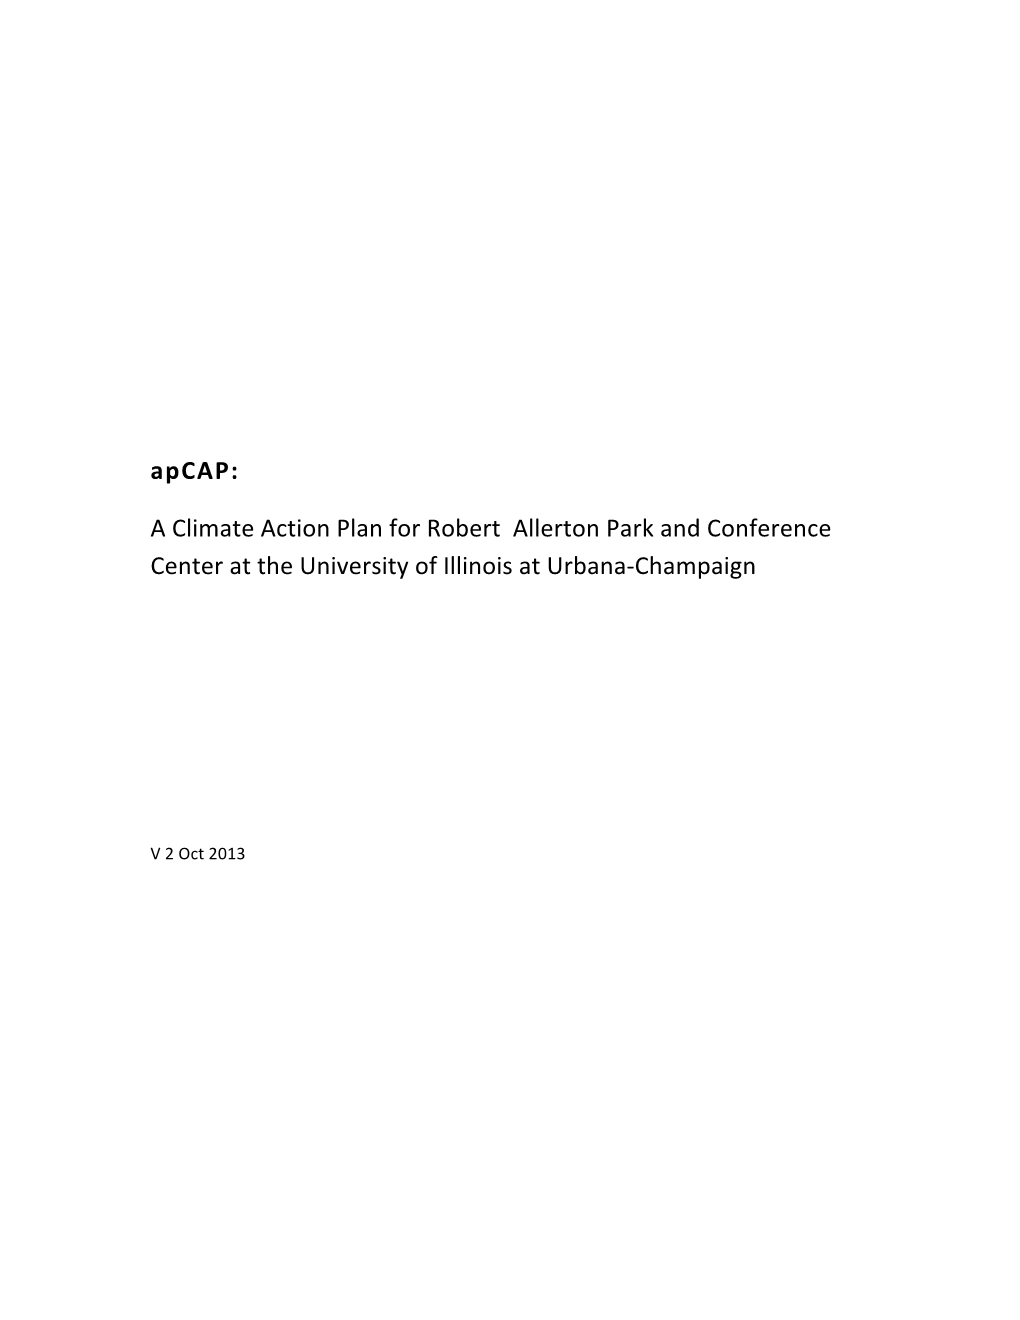 Allerton Park Climate Action Plan (Apcap)